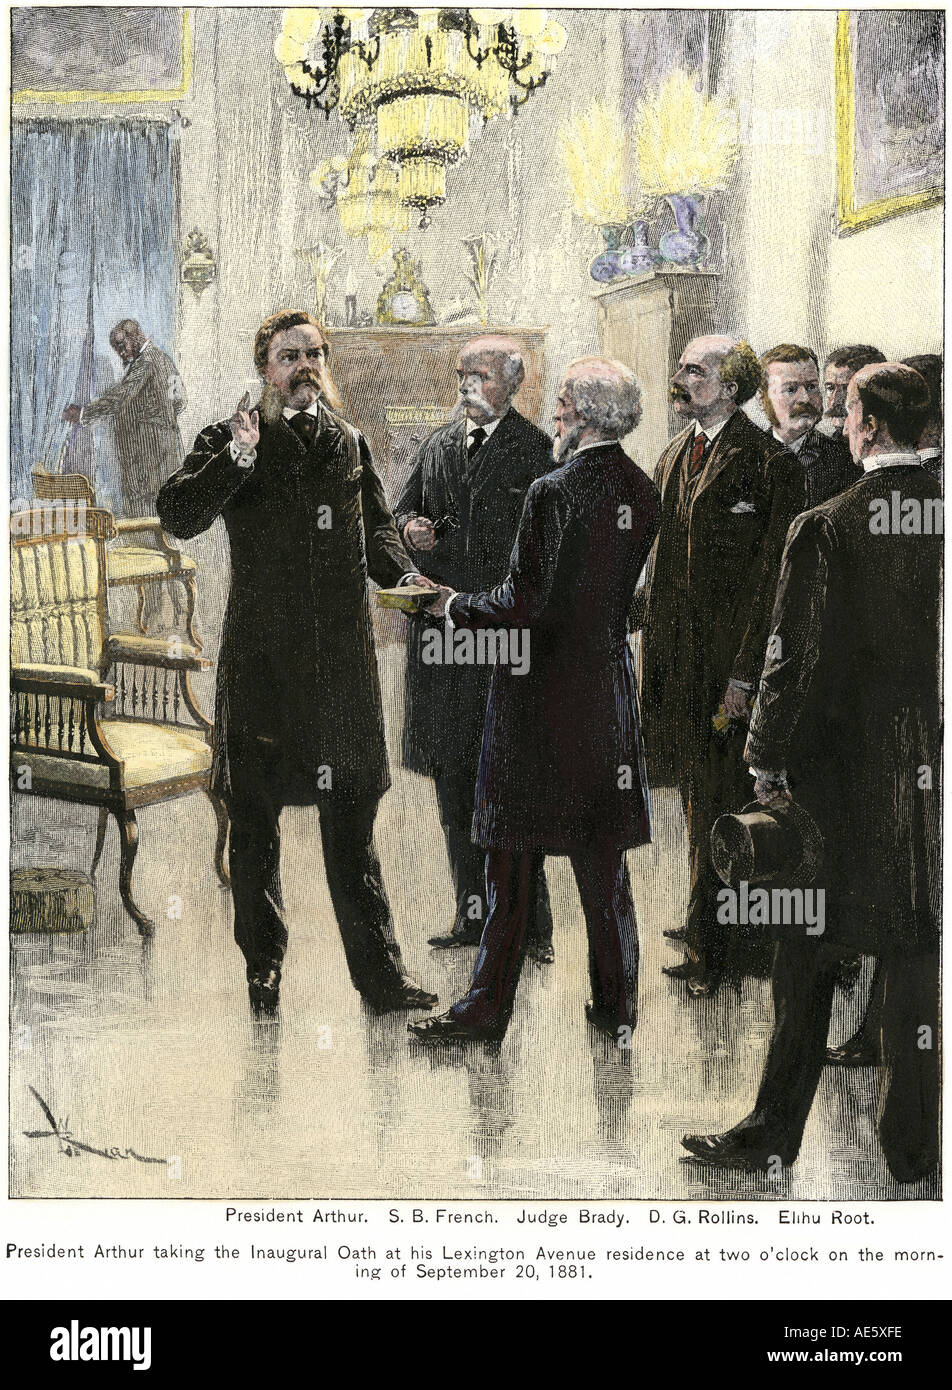 Chester Arthur unter Berücksichtigung der Präsidentschaftswahlen Eid in seiner Wohnung in New York City, nachdem Präsident Garfield Ermordung 1881. Hand - farbige Holzschnitt Stockfoto